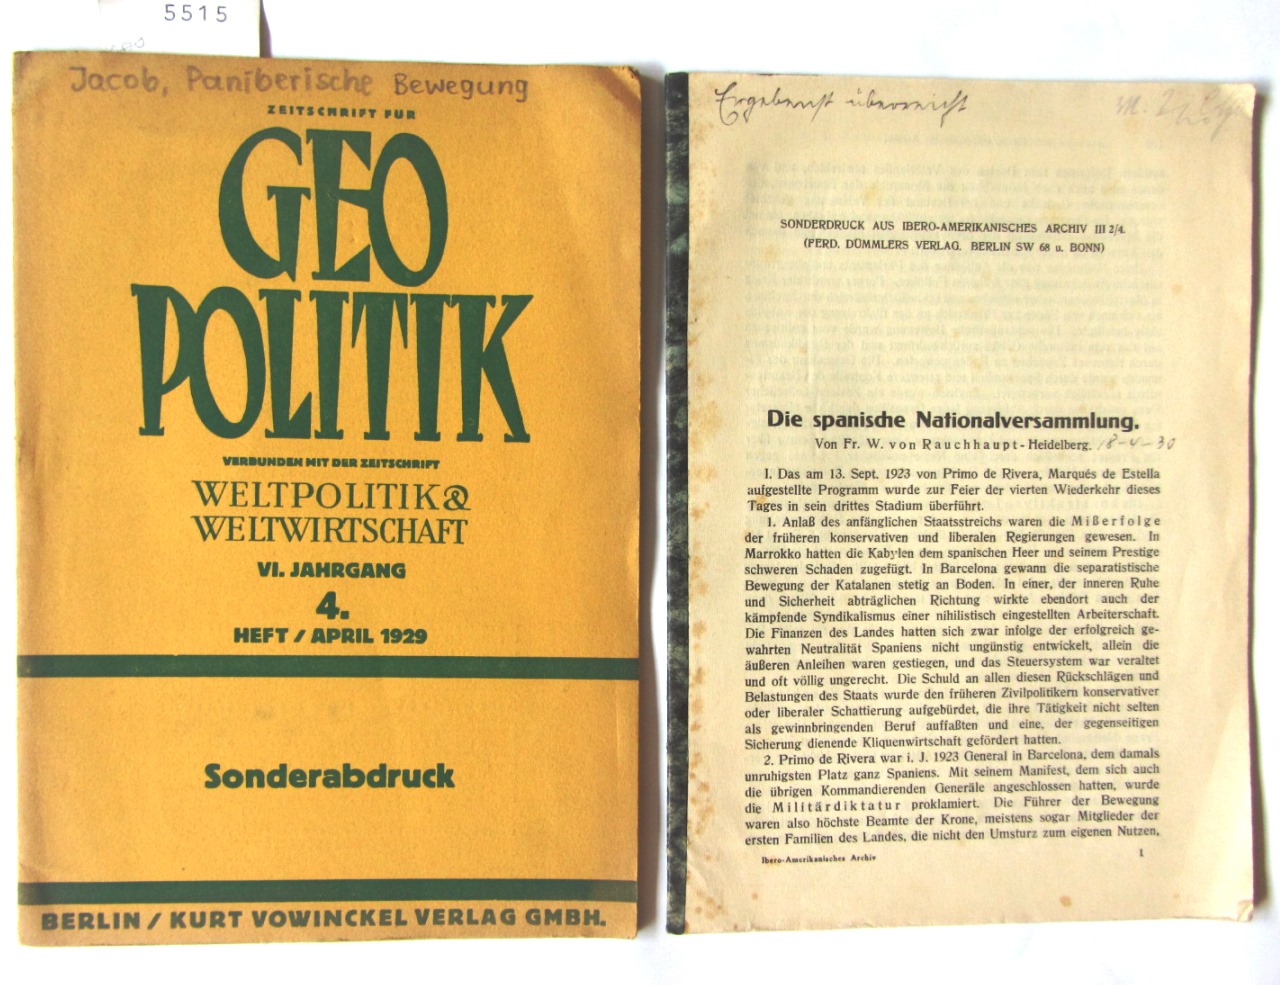 Jacob, Gerhard:  Die paniberische Bewegung. Sonderabdruck aus "Geopolitik", VI.Jg., 4.Heft, S.306-313. 